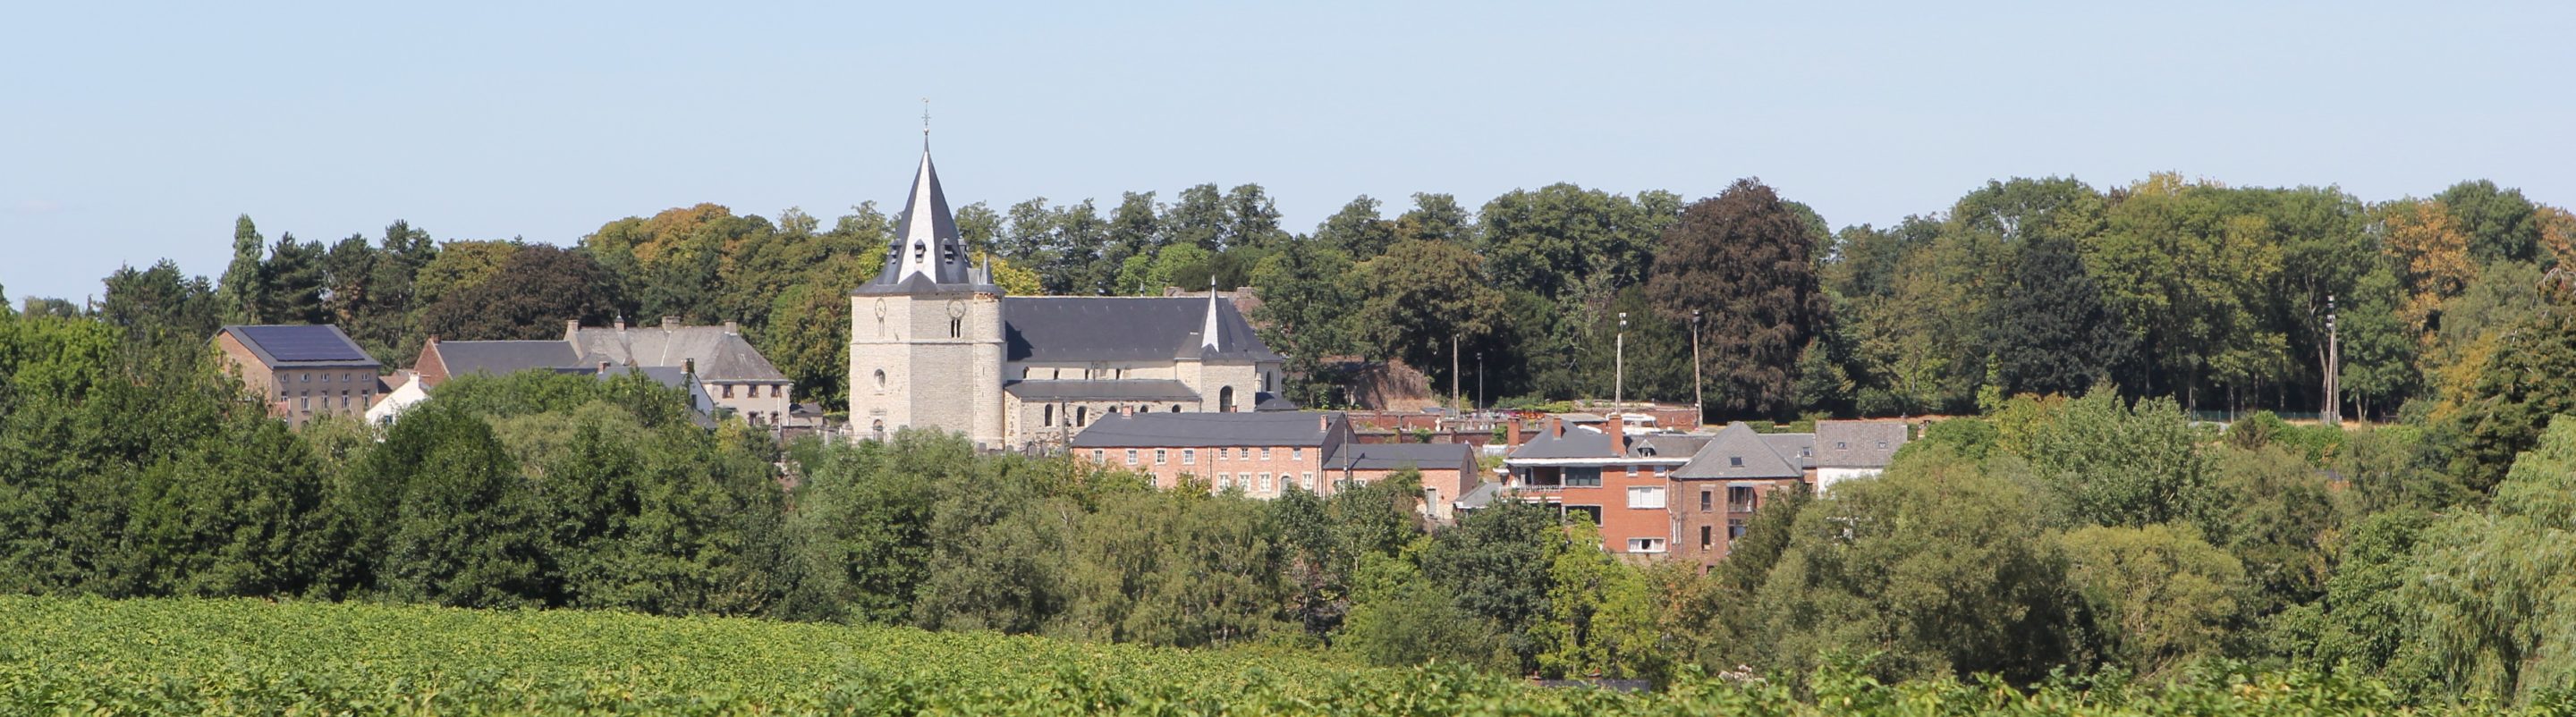 Eglise de Tourinnes-la-Grosse